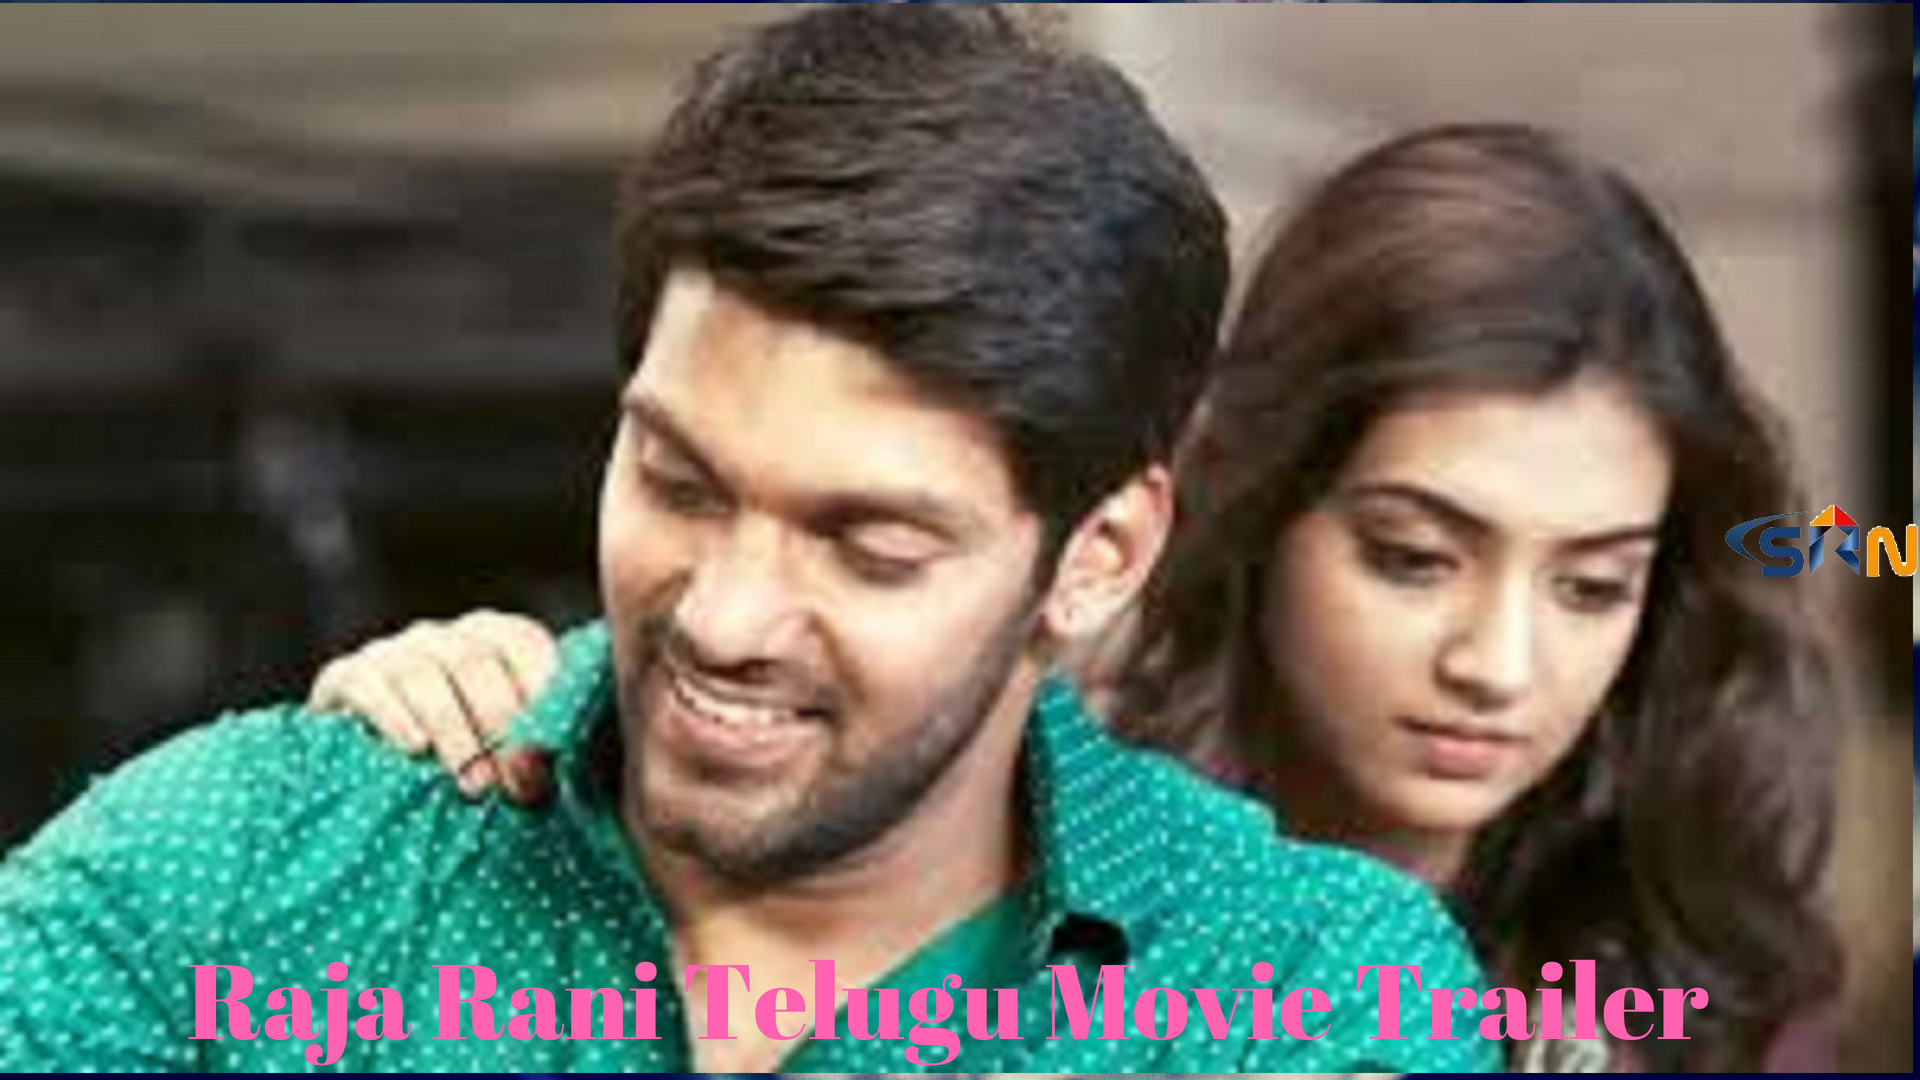 Raja Rani Telugu Movie Trailer 